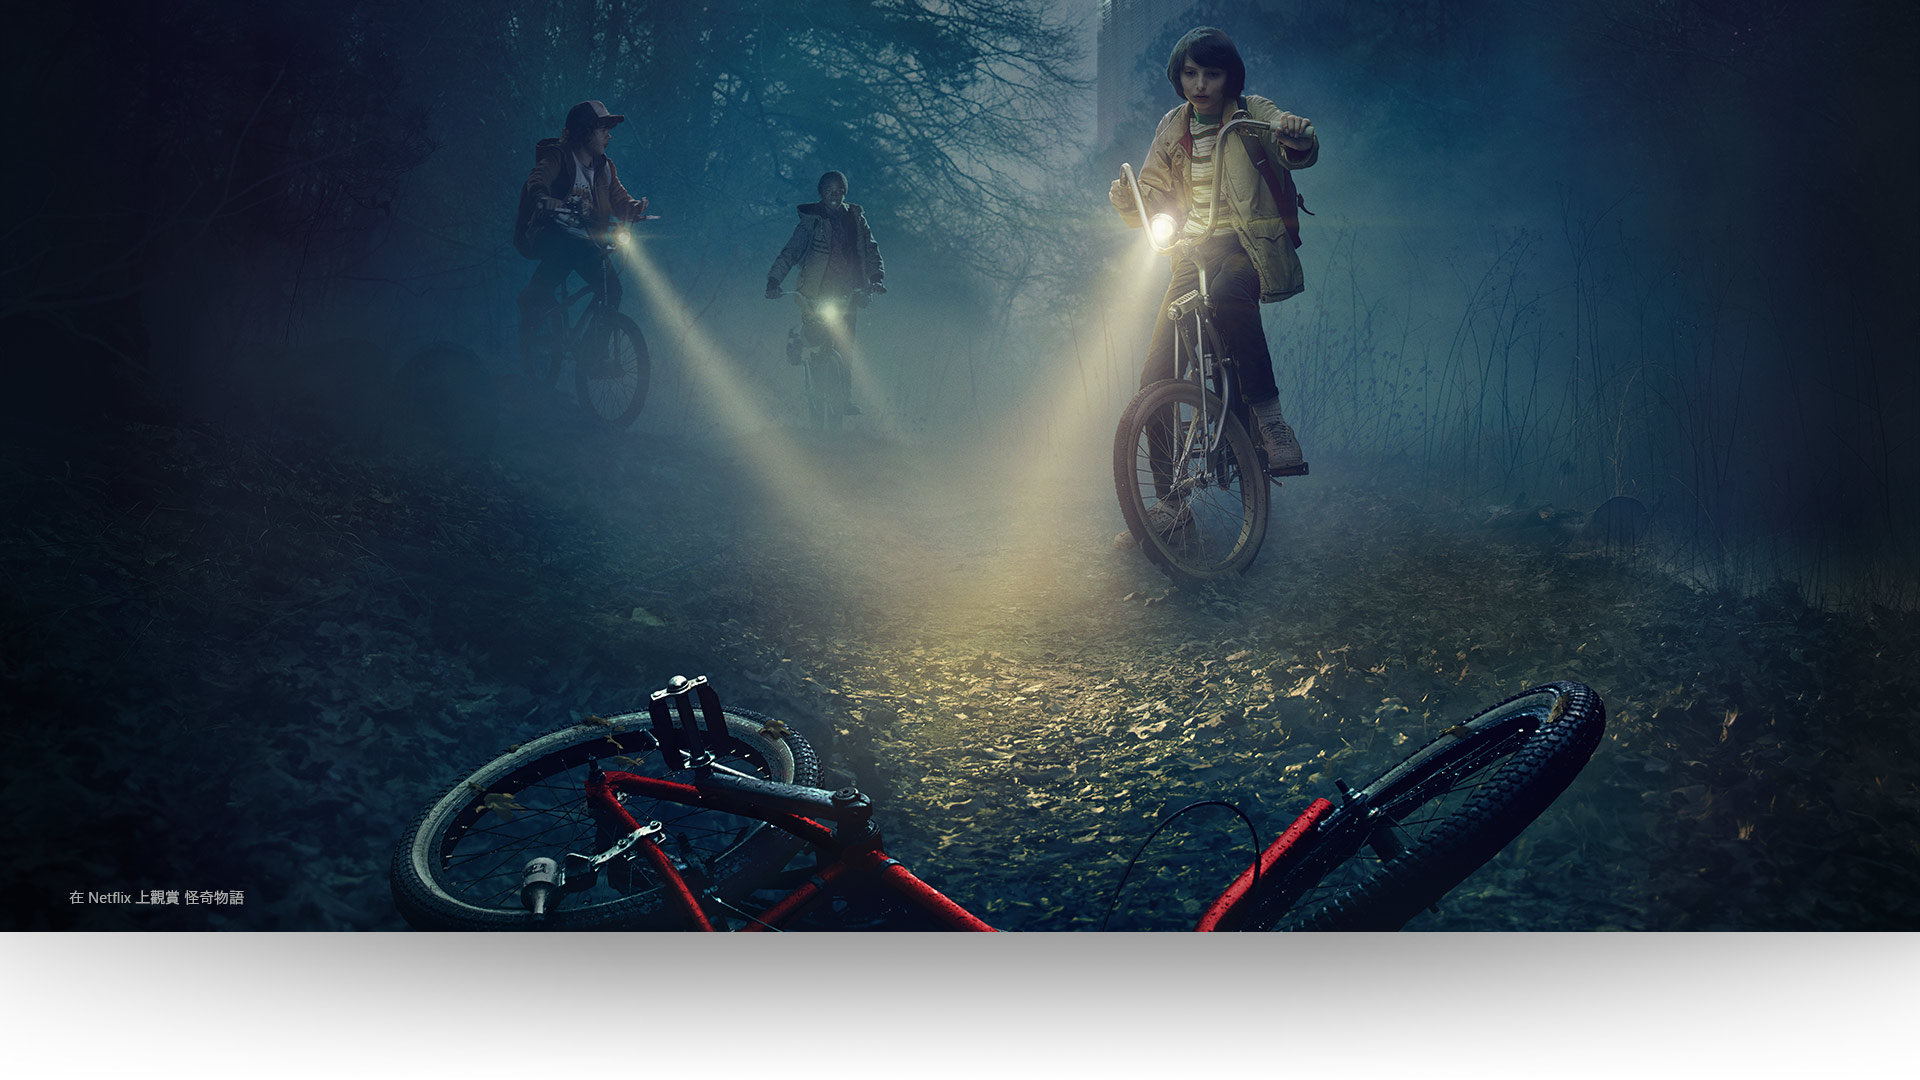 《怪奇物語》 – Dustin、Luca 和 Mike 在陰暗森林小路上，用燈照亮了一輛廢棄自行車。在 Netflix 觀看《怪奇物語》。